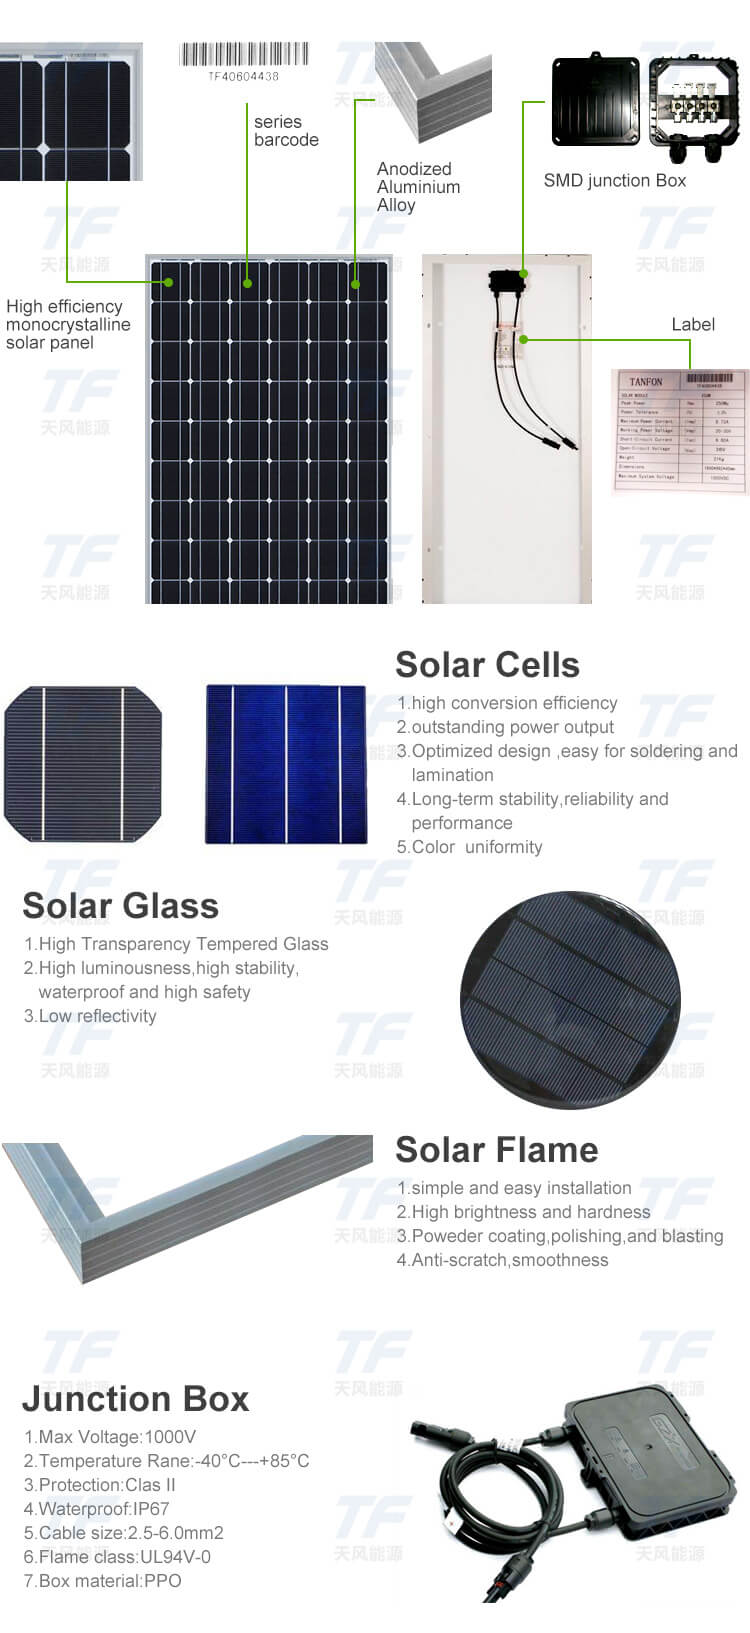 300 Watt Solar Panel